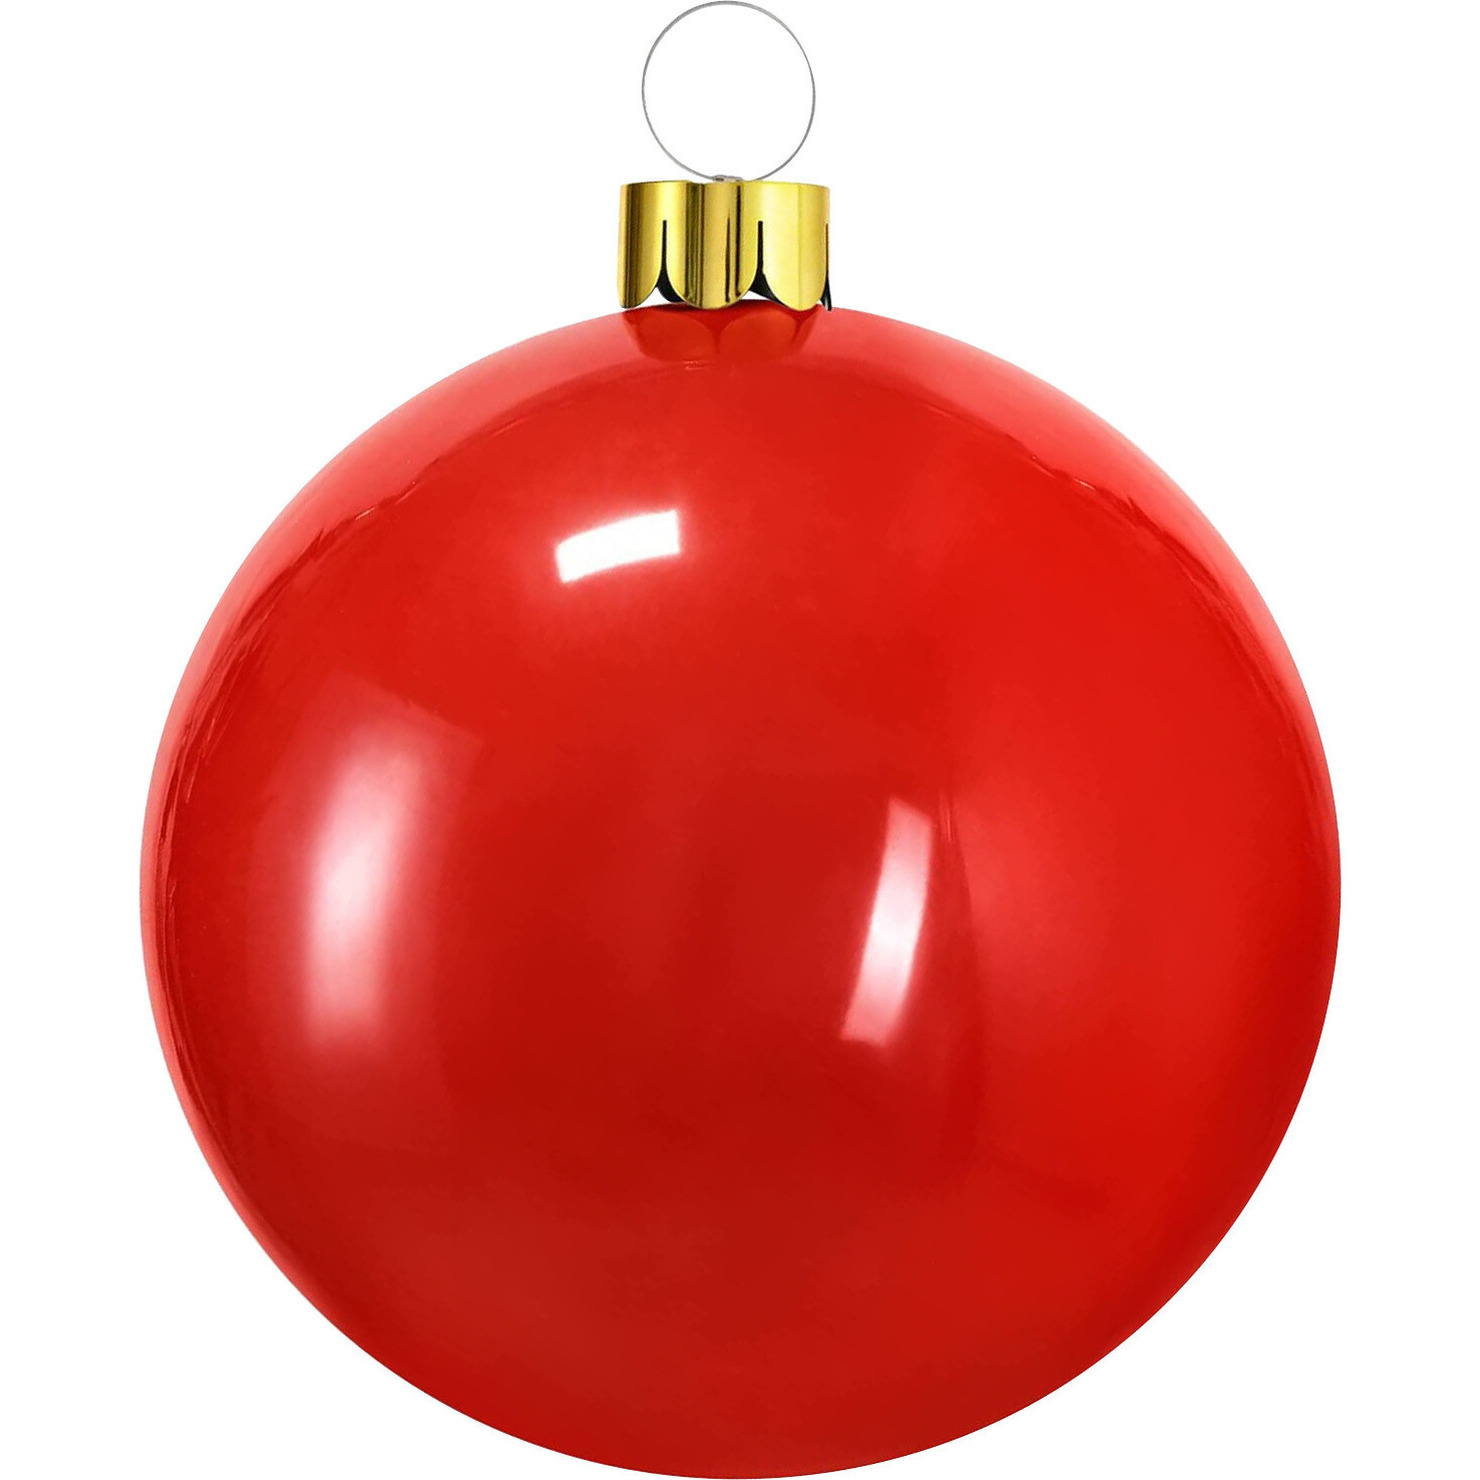 Mega grote decoratie kerstbal 65 cm rood opblaasbaar